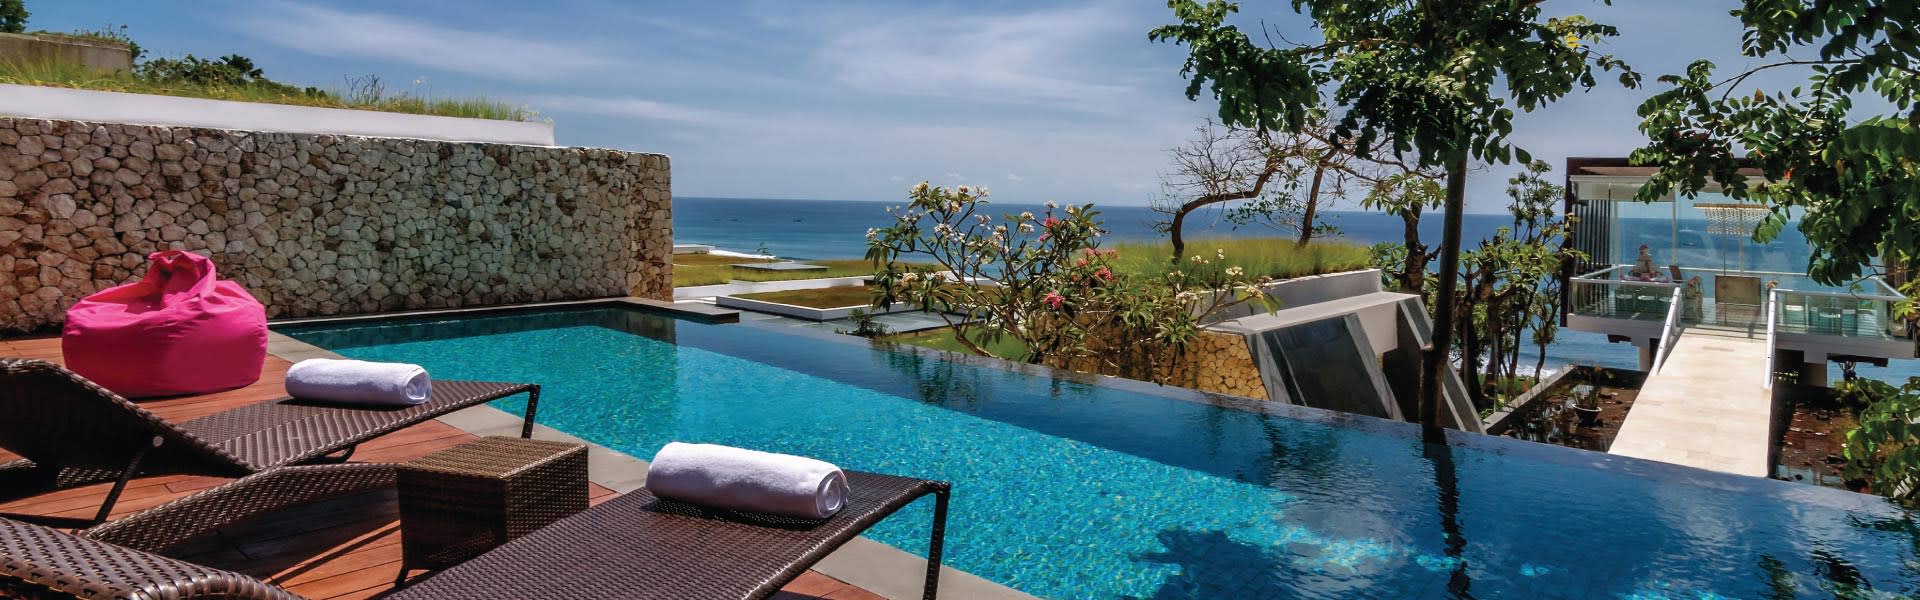 Bali Ocean View Villa - Bali Gates of Heaven